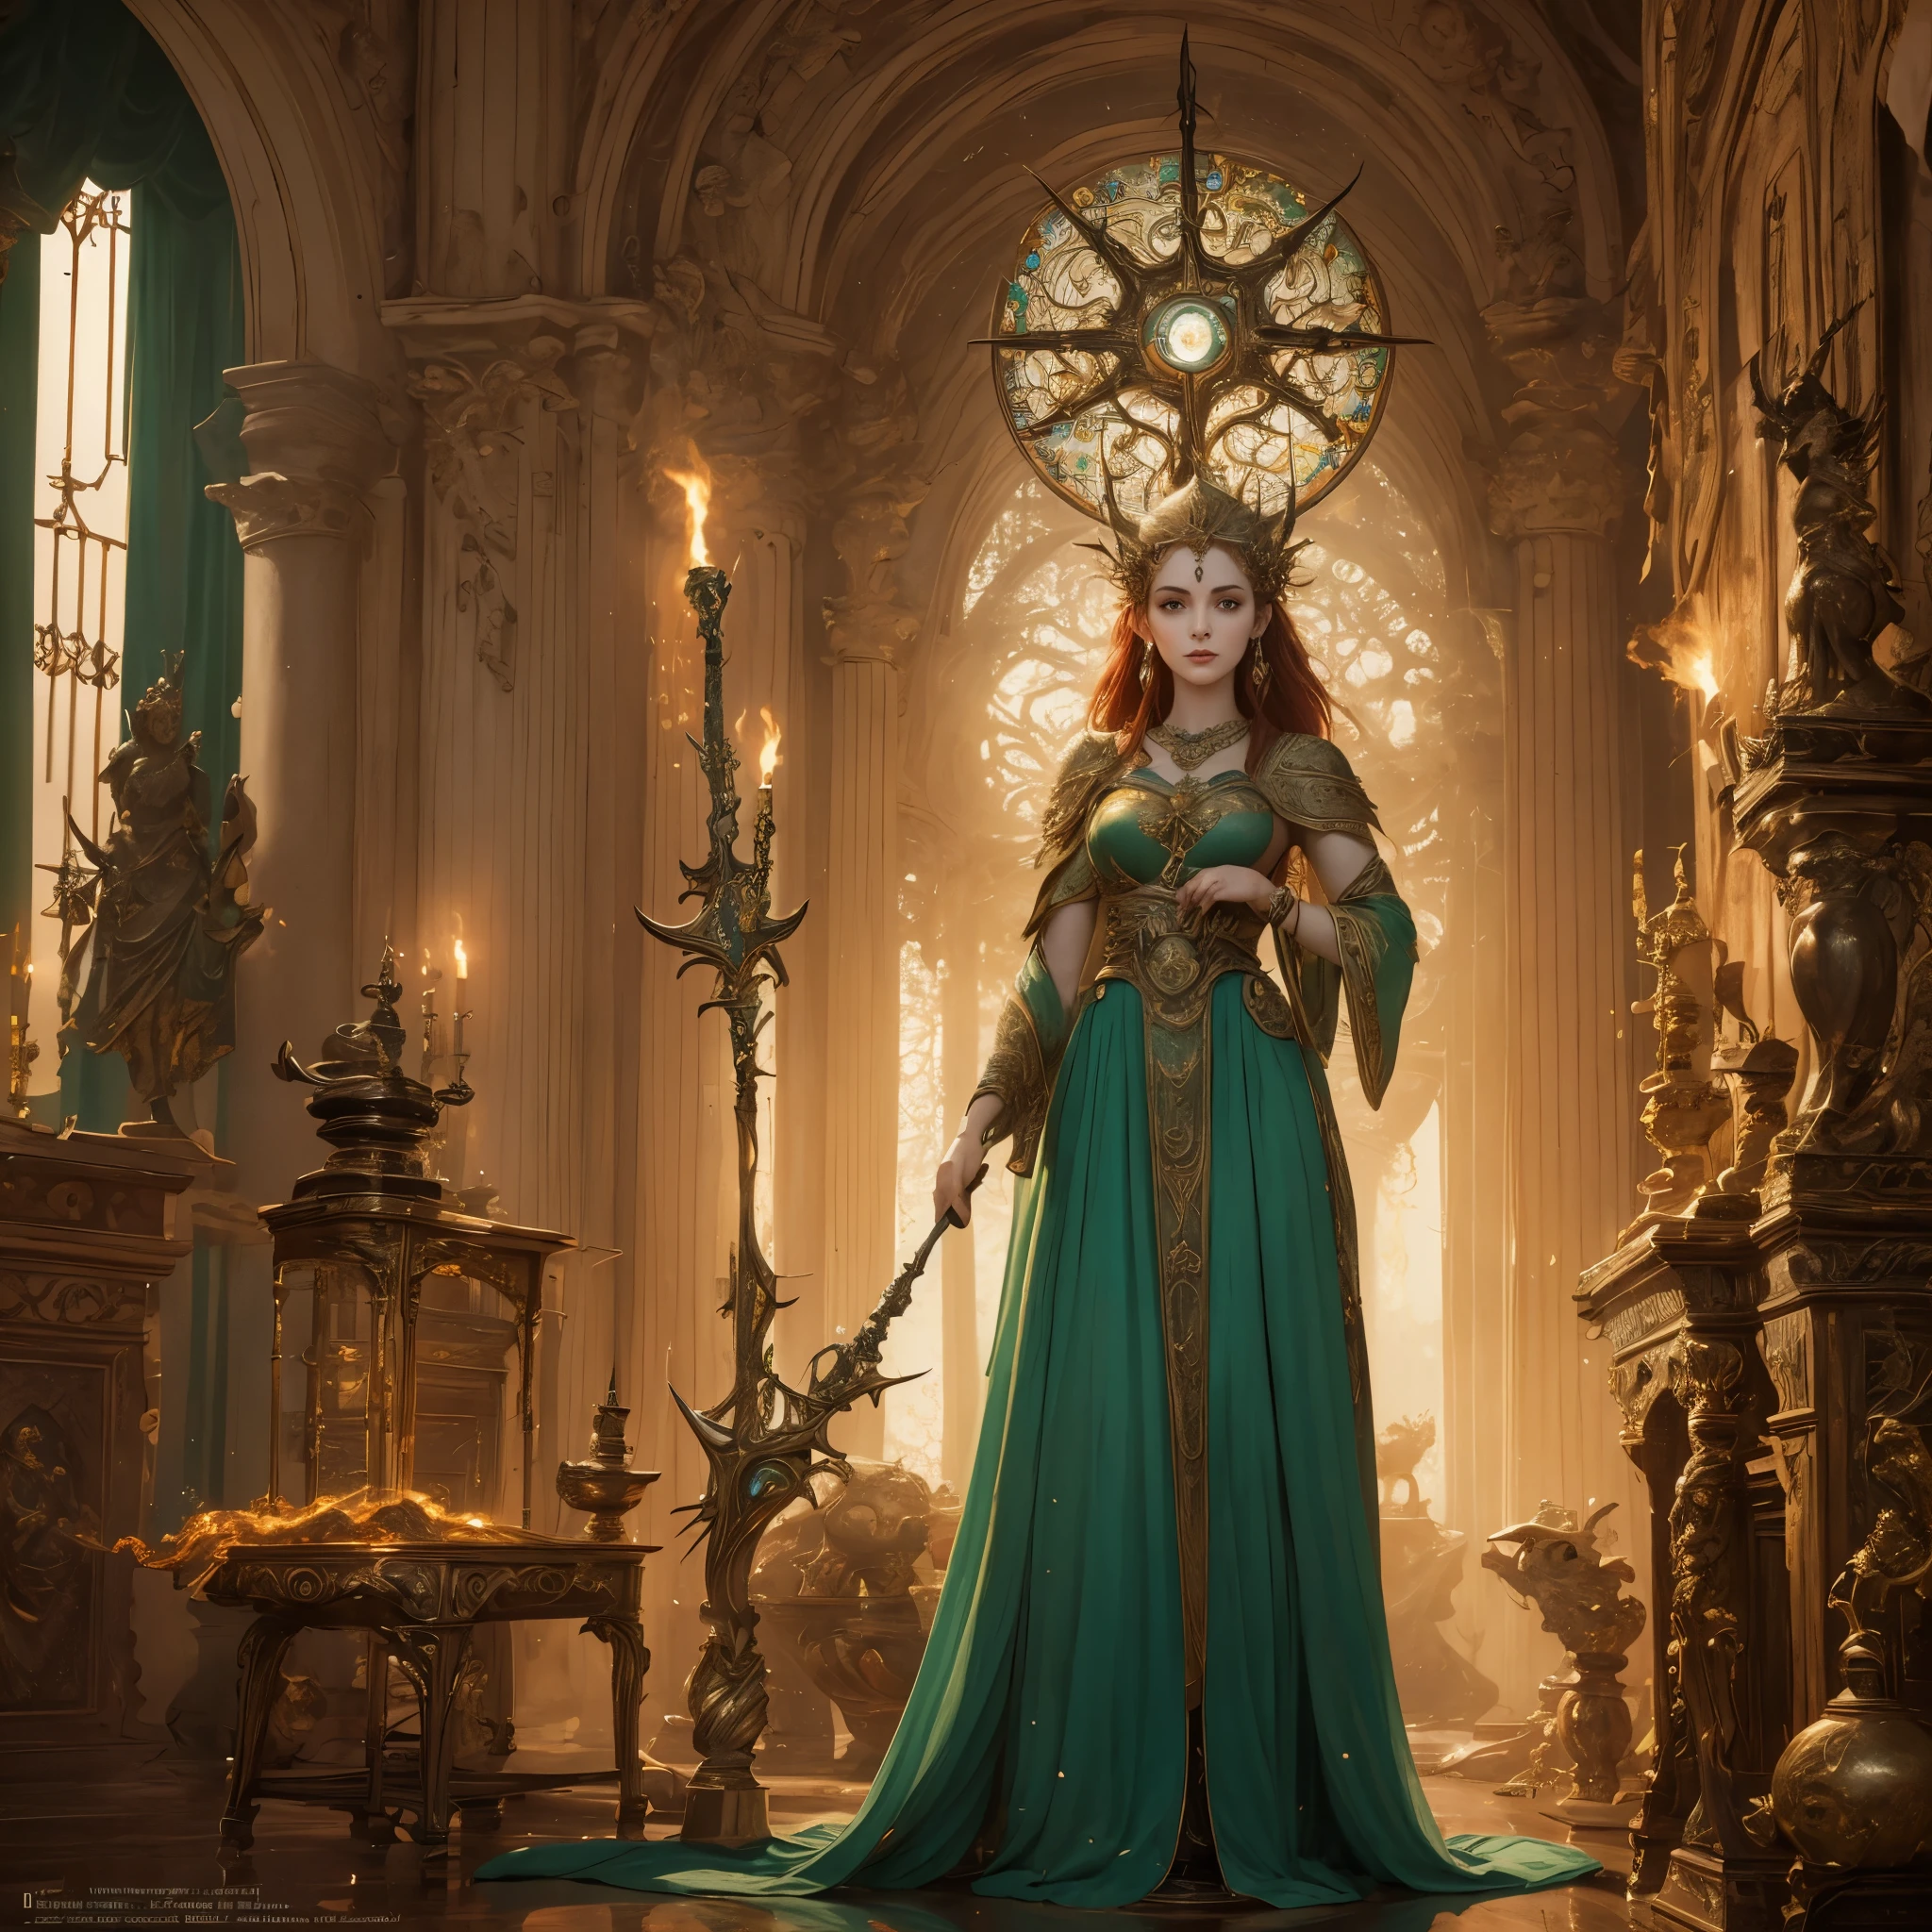 Brígida, a reverenciada deusa irlandesa, permanece alta e radiante em sua glória divina. Ela é conhecida como a deusa dos ferreiros e das forjas, um símbolo de criatividade e habilidade. Sua presença é cativante, Impondo respeito e admiração. Com cabelos ruivos esvoaçantes e olhos verdes penetrantes, ela incorpora a essência da beleza irlandesa. Vestida com um vestido esvoaçante de verde vibrante, adornado com intrincados padrões celtas, ela exala elegância e graça. Brígida's hands, delicado e poderoso, segure as ferramentas de seu ofício, um martelo e uma bigorna, símbolos de seu domínio sobre a forja. A sala em que ela está é banhada por um brilho quente, emanando das chamas bruxuleantes da lareira. Enquanto ela olha para um